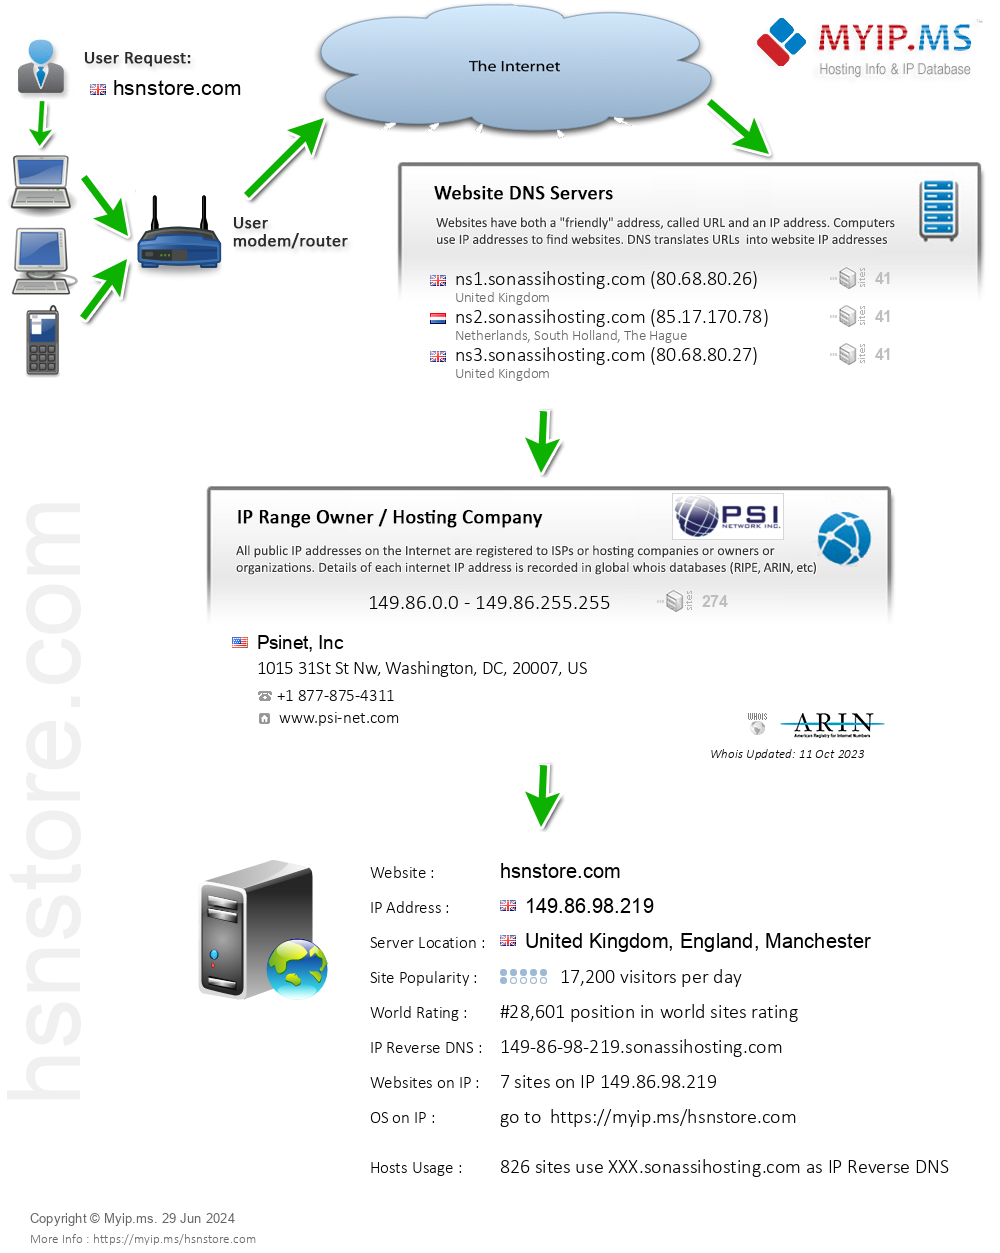 Hsnstore.com - Website Hosting Visual IP Diagram